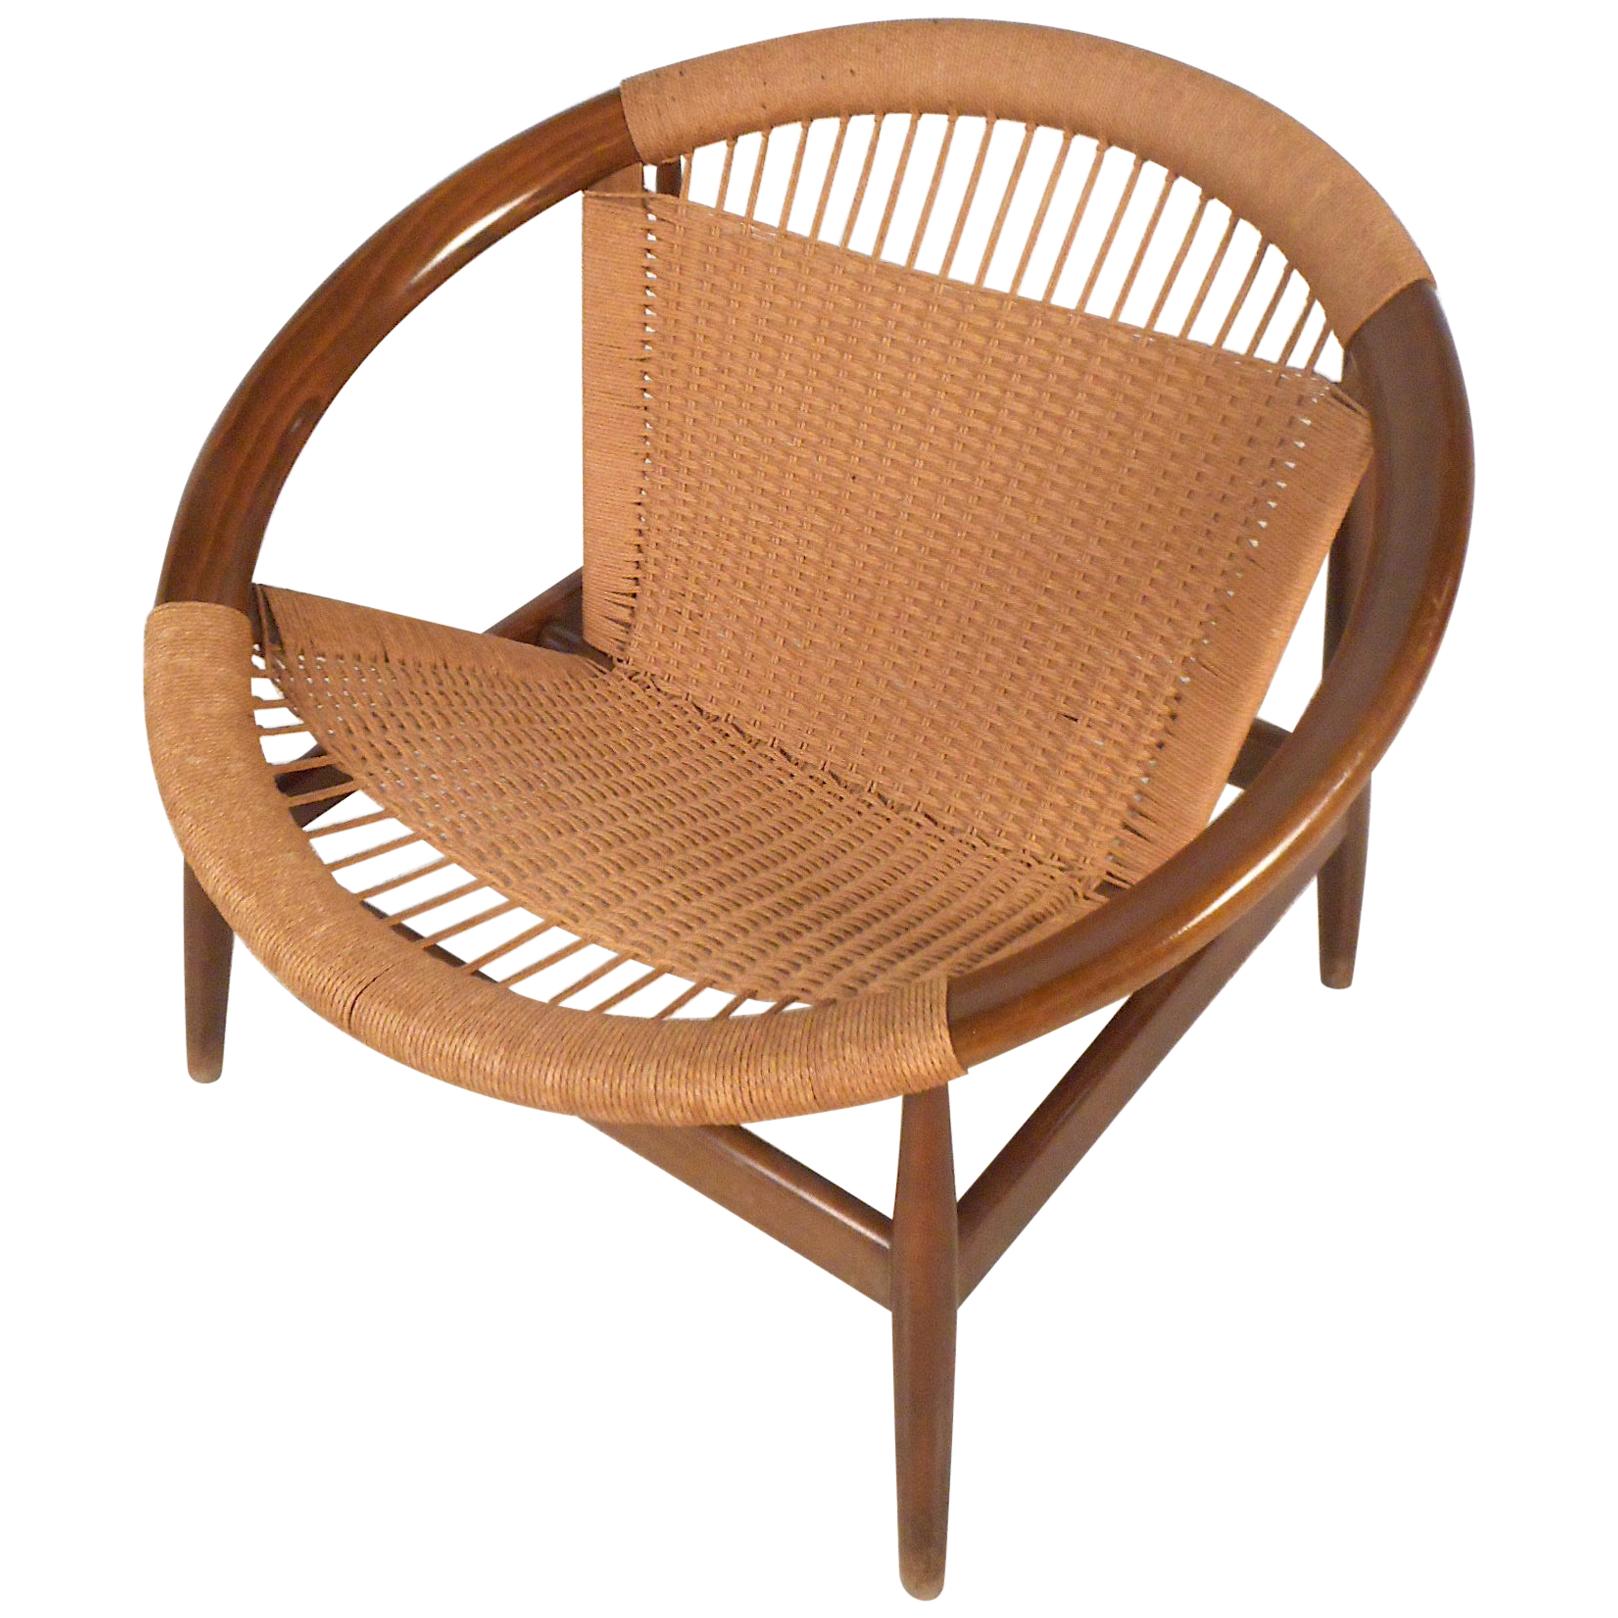 Danish Modern "Ringstol" Hoop Chair by Illum Wikkelsø